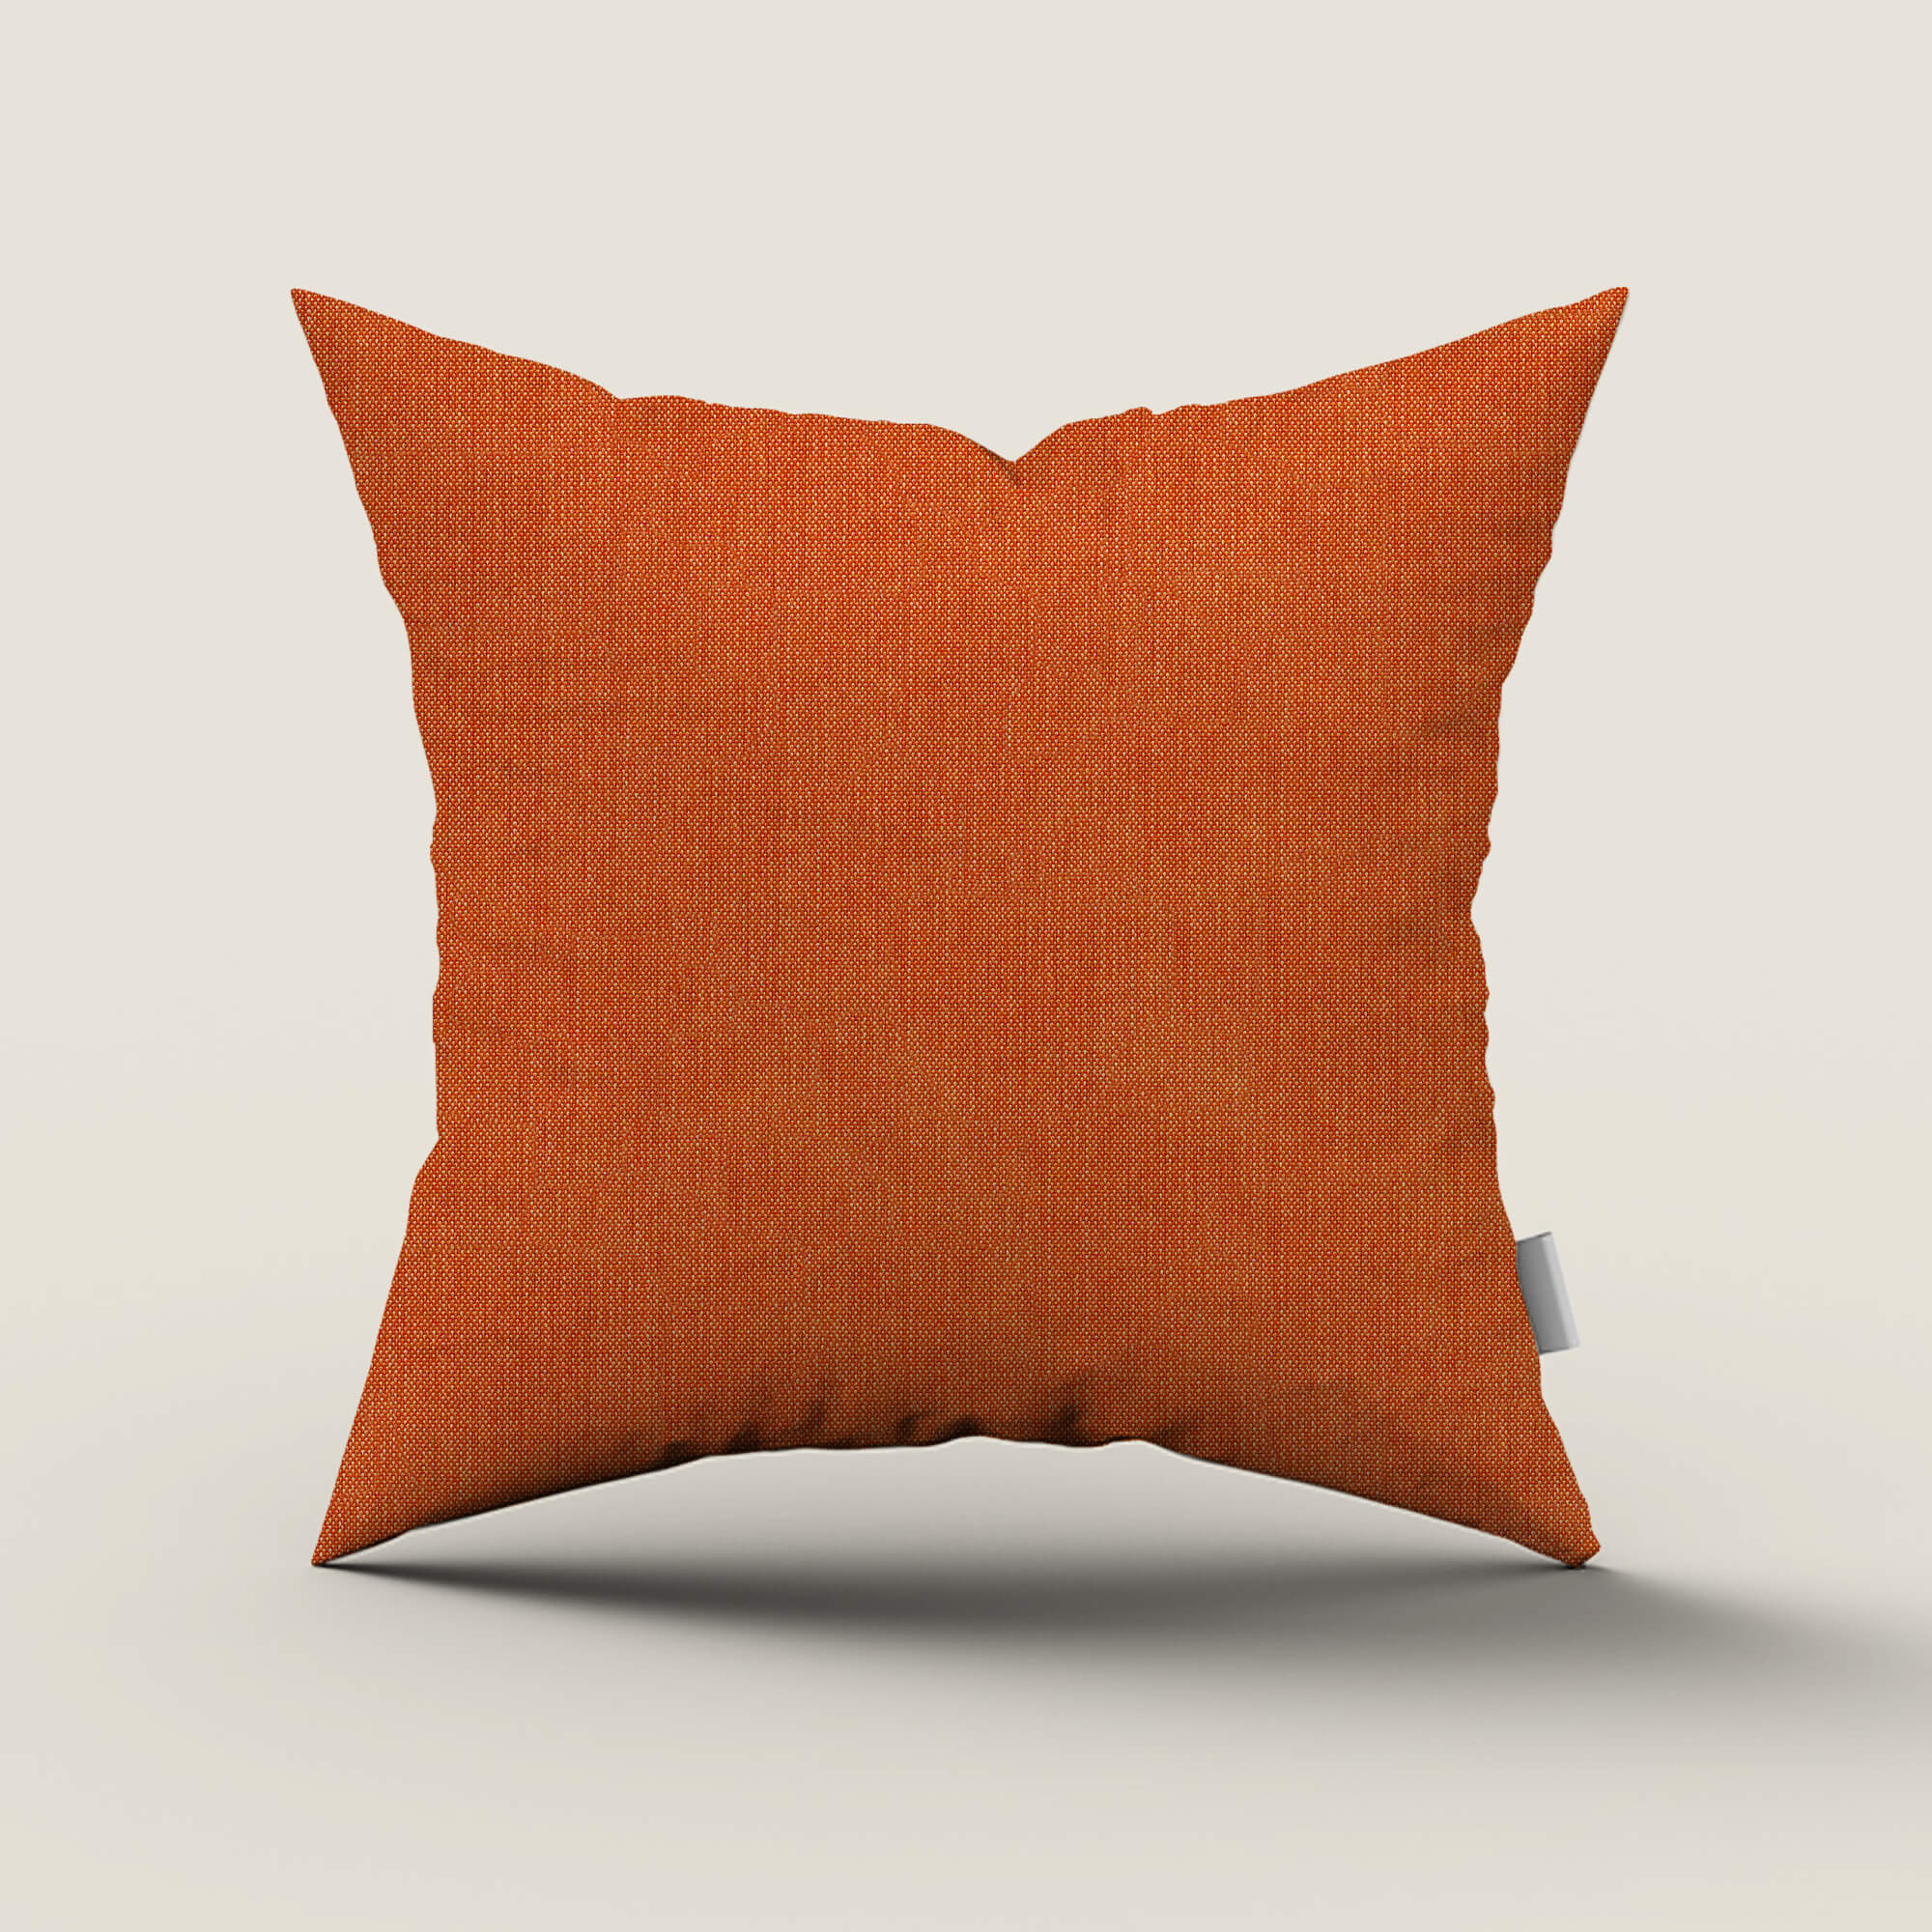 PENGI Waterproof Outdoor Pillow Case 1 Pcs - Blend Pumpkin